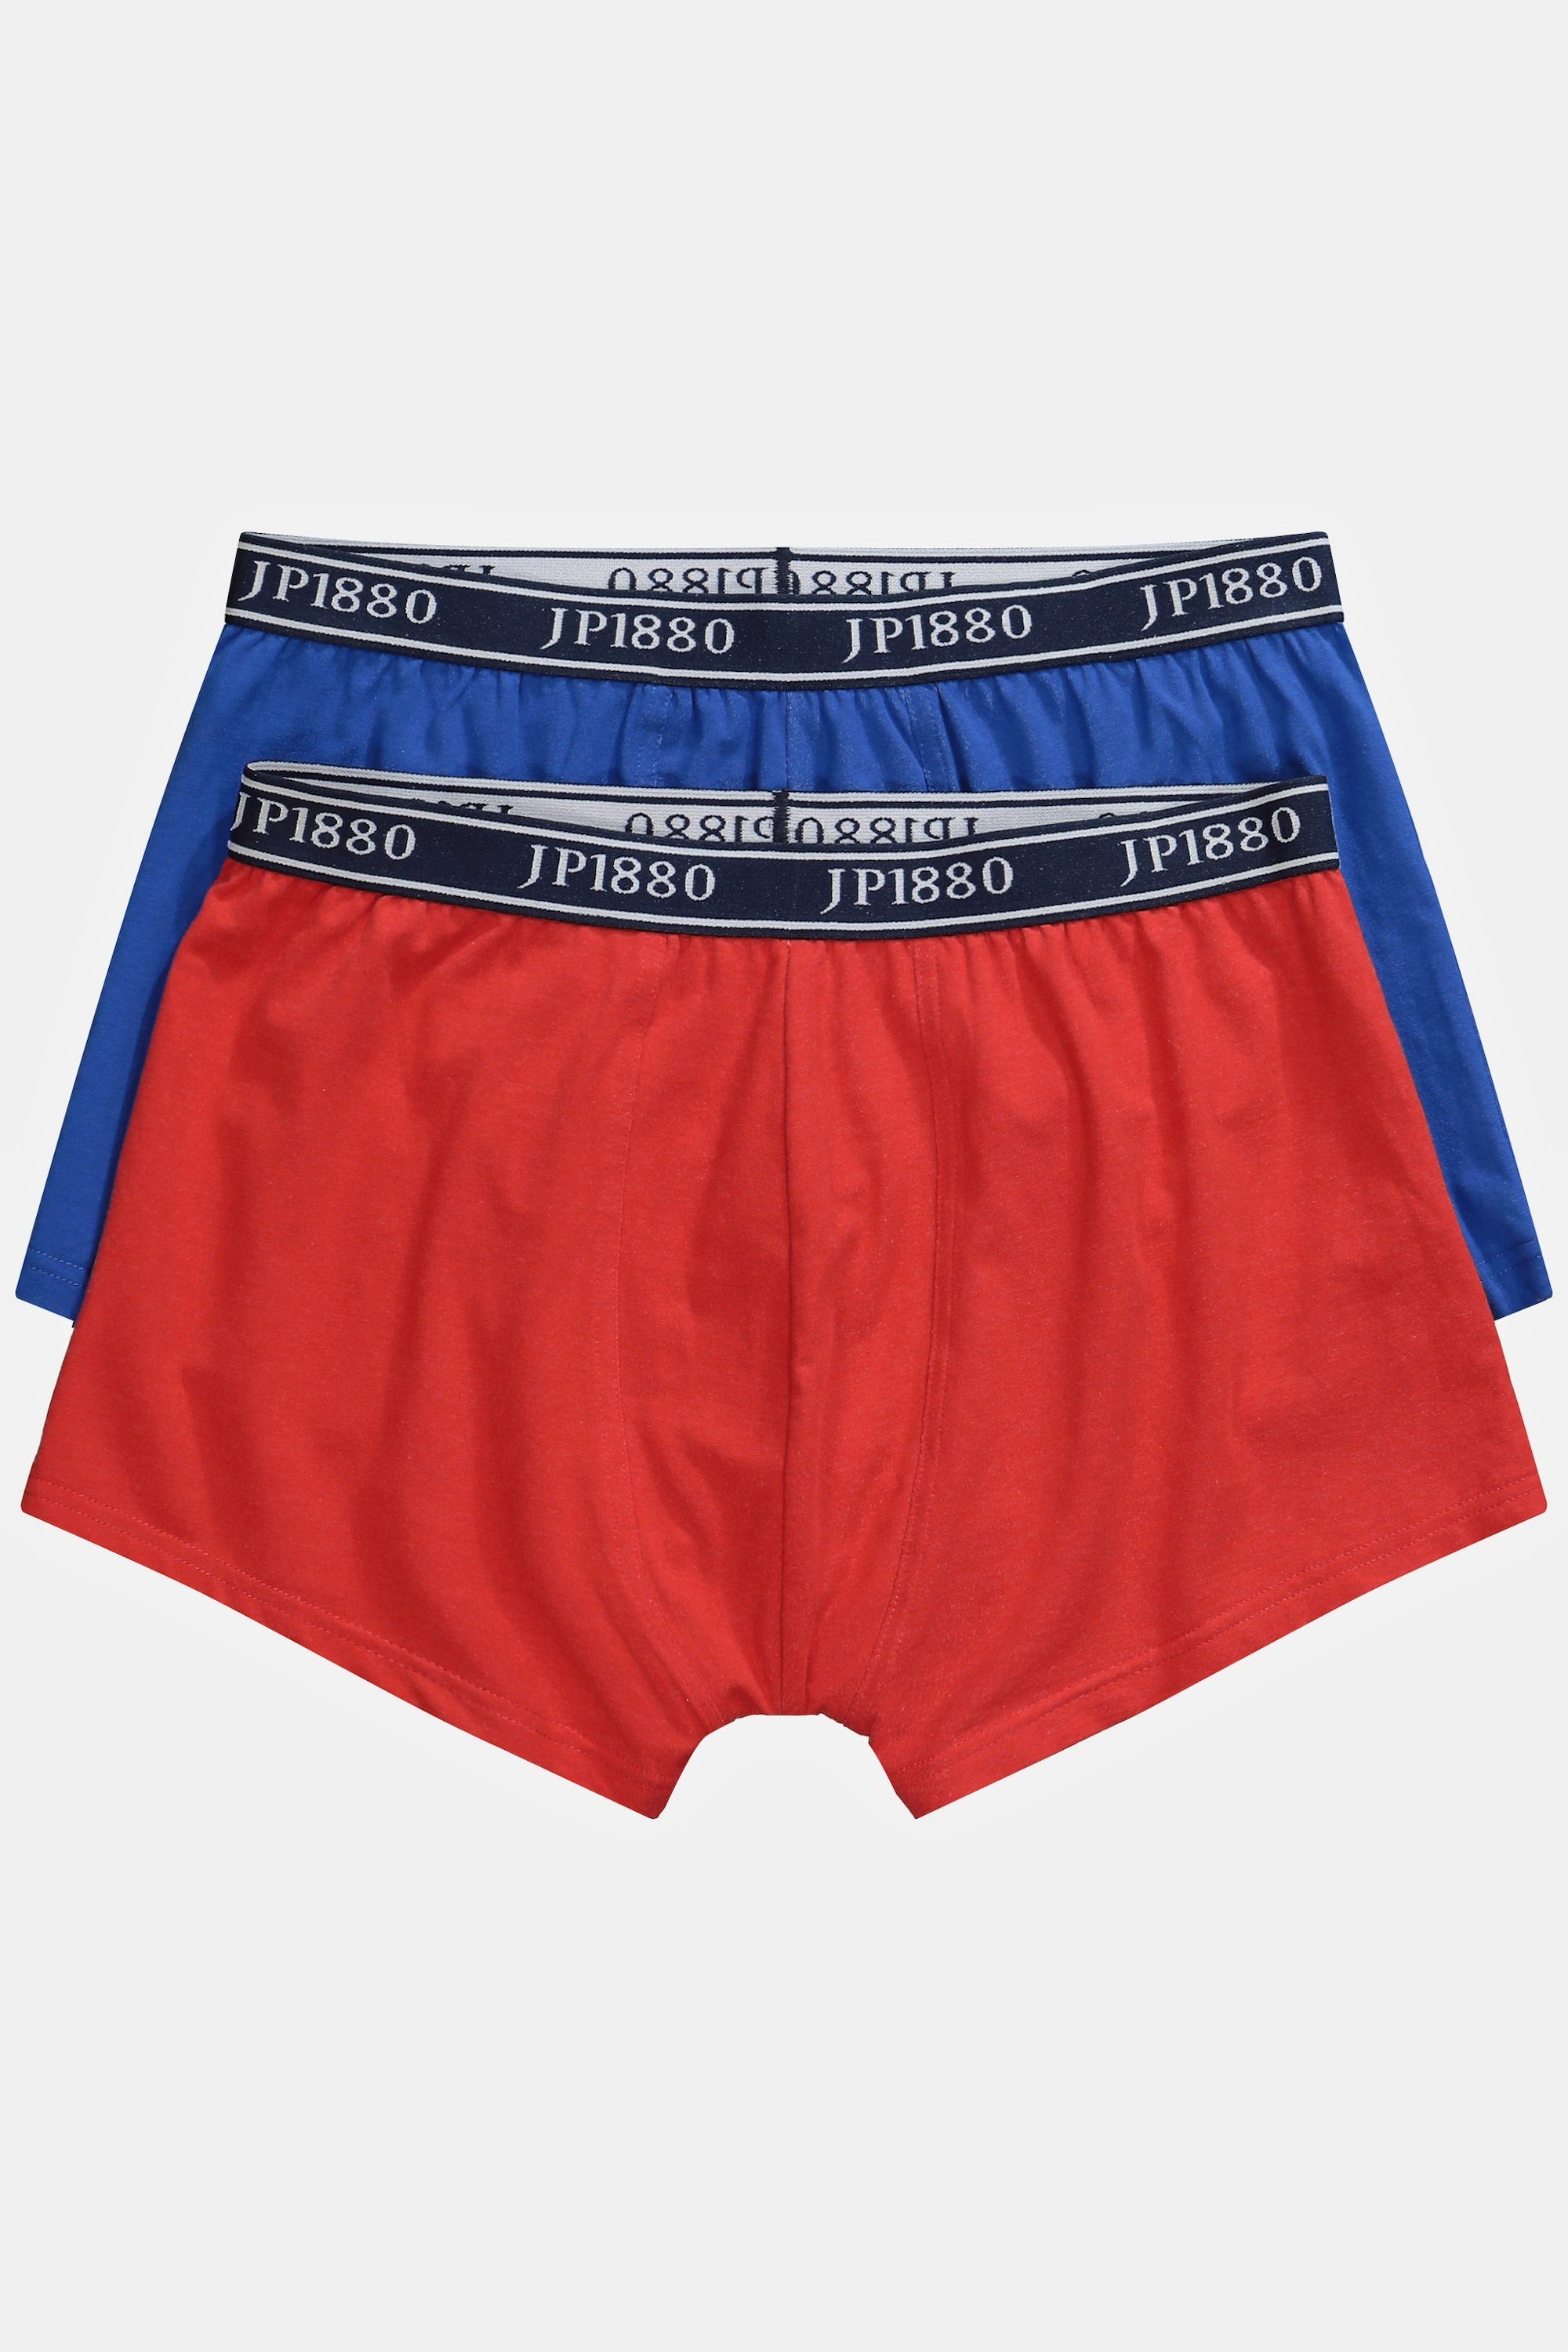 JP1880 Boxershorts FLEXNAMIC® paprikarot Unterhose Hip-Pants 2er-Pack